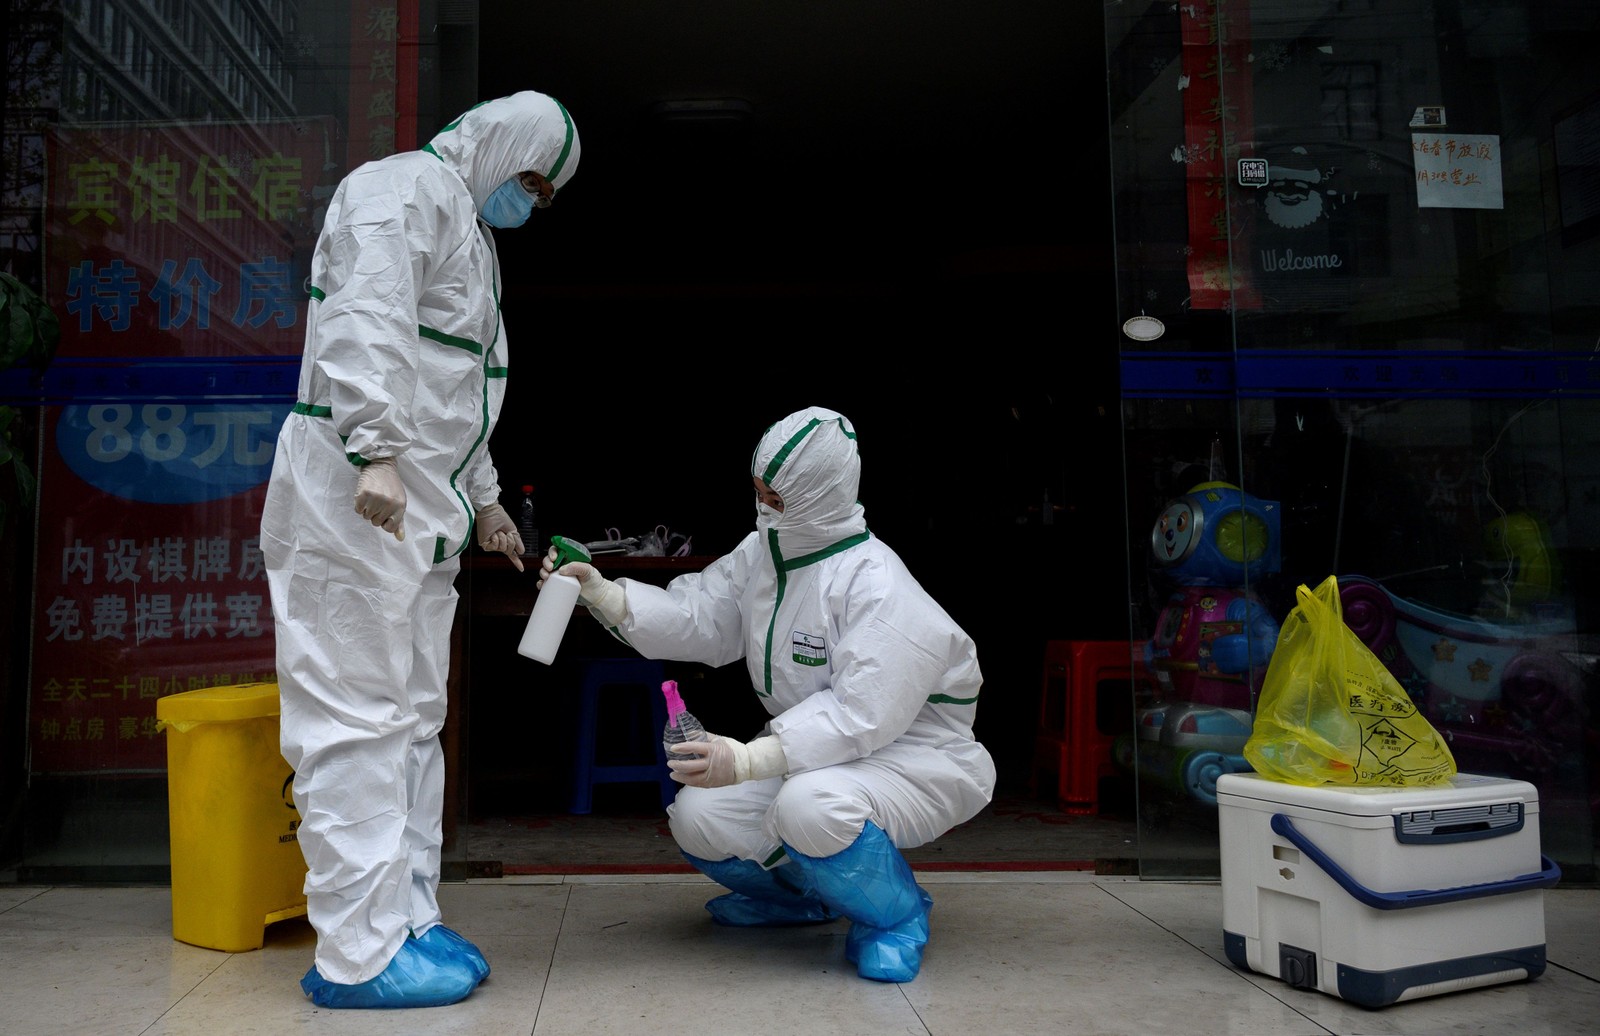 Médico em traje de proteção desinfeta colega em clínica de teste para Covid-19 em Wuhan, na China — Foto: Noel Celis / AFP